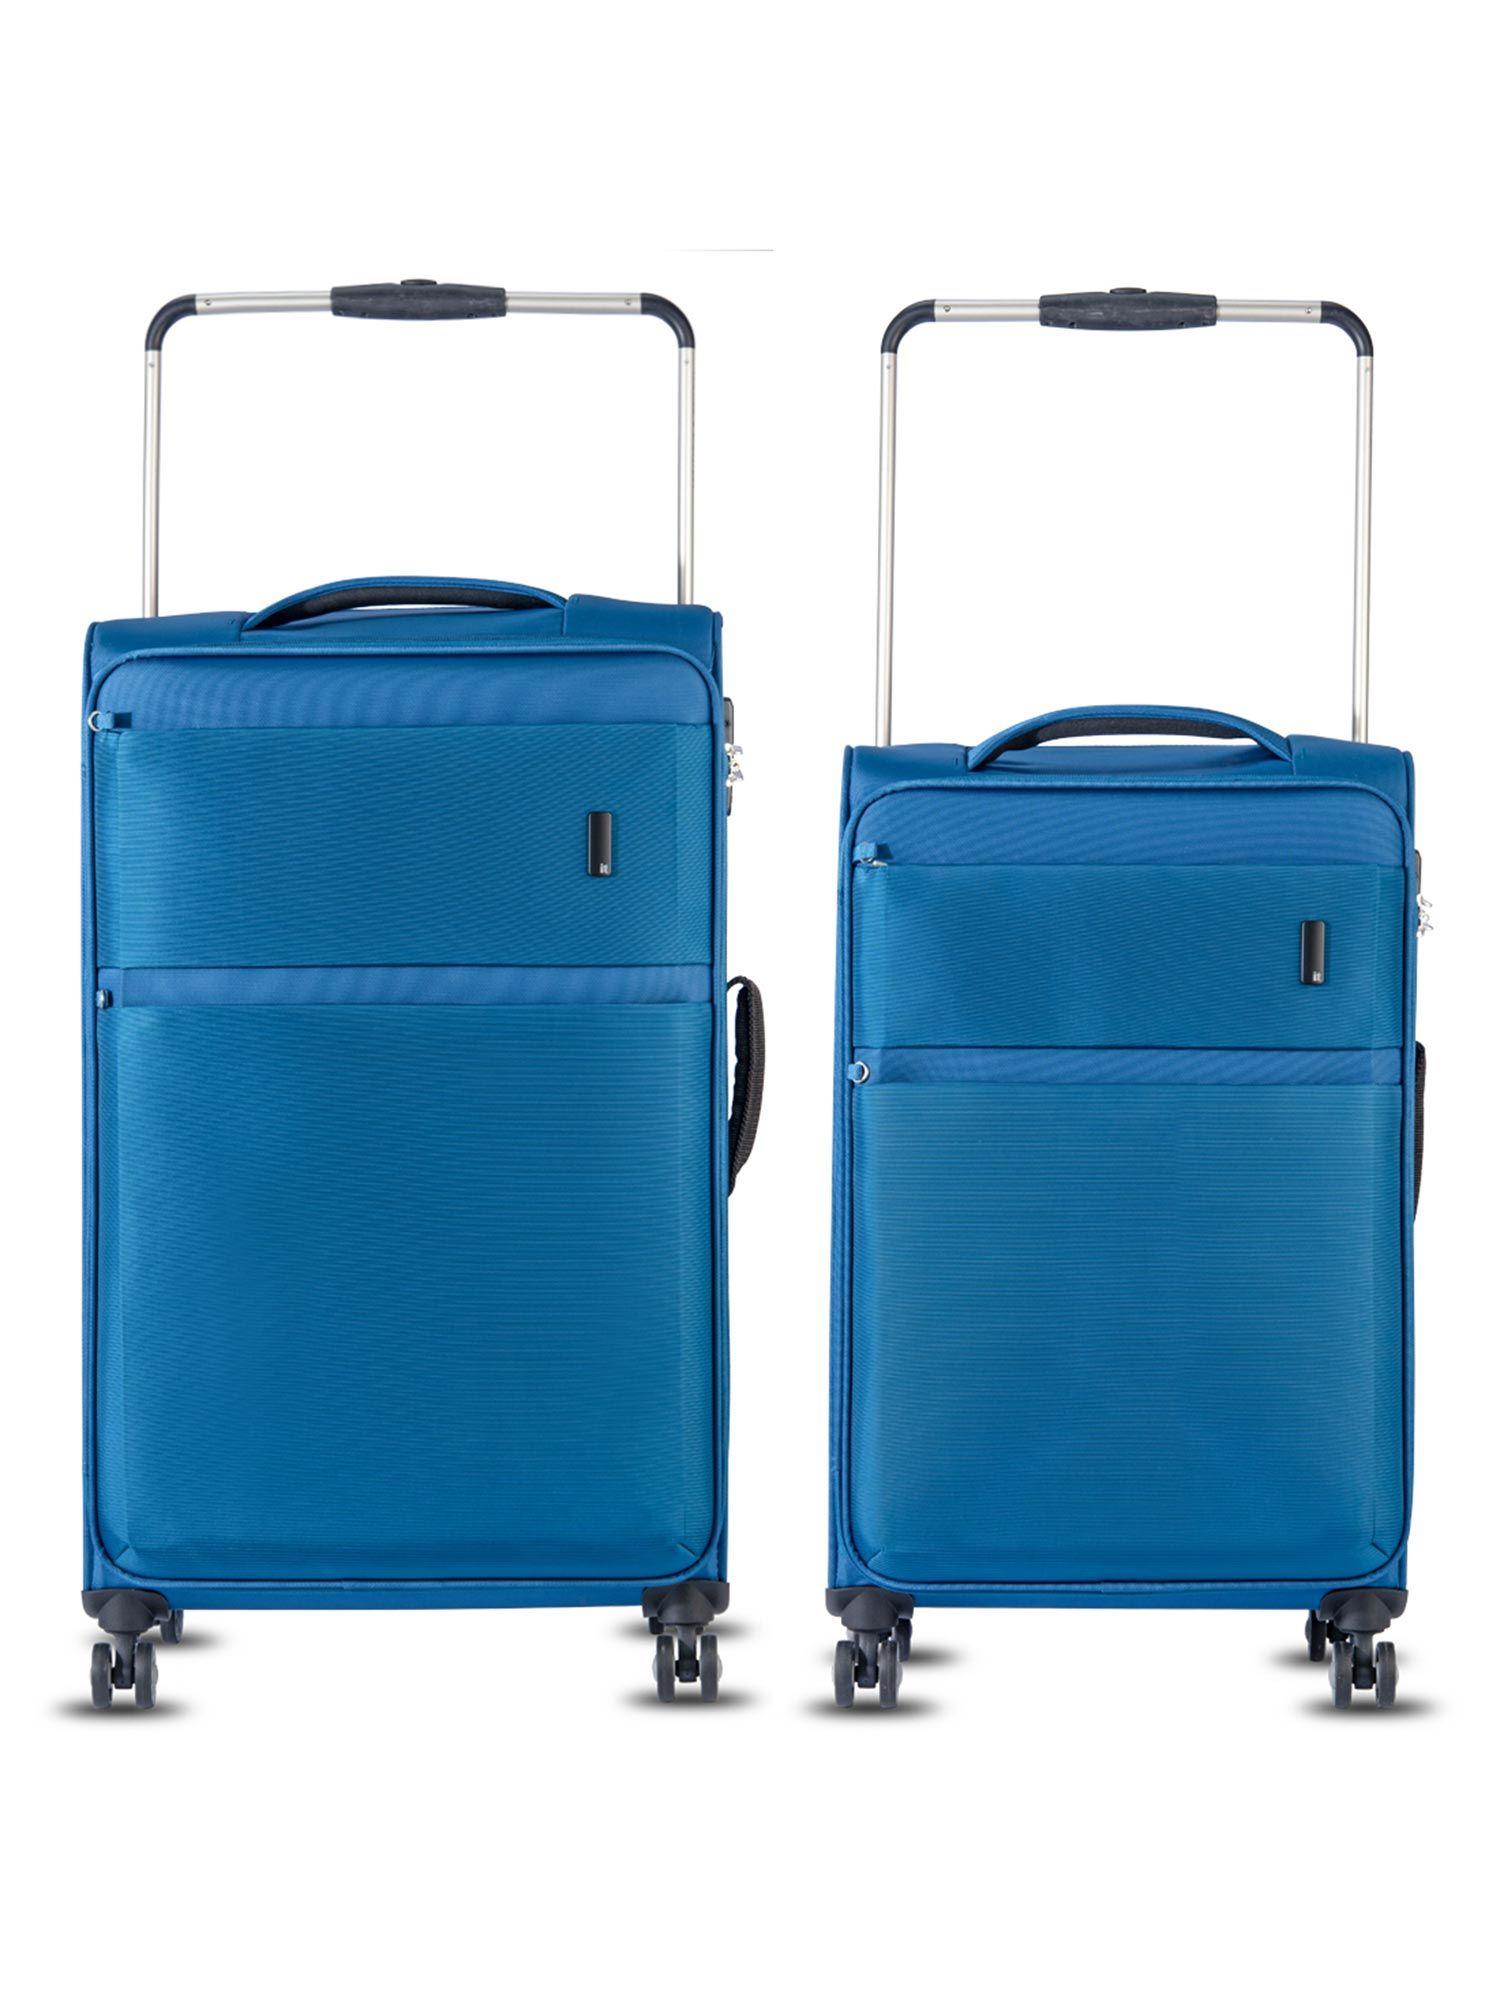 debonair-trolley-two-tone-blue-(pack-of-2)